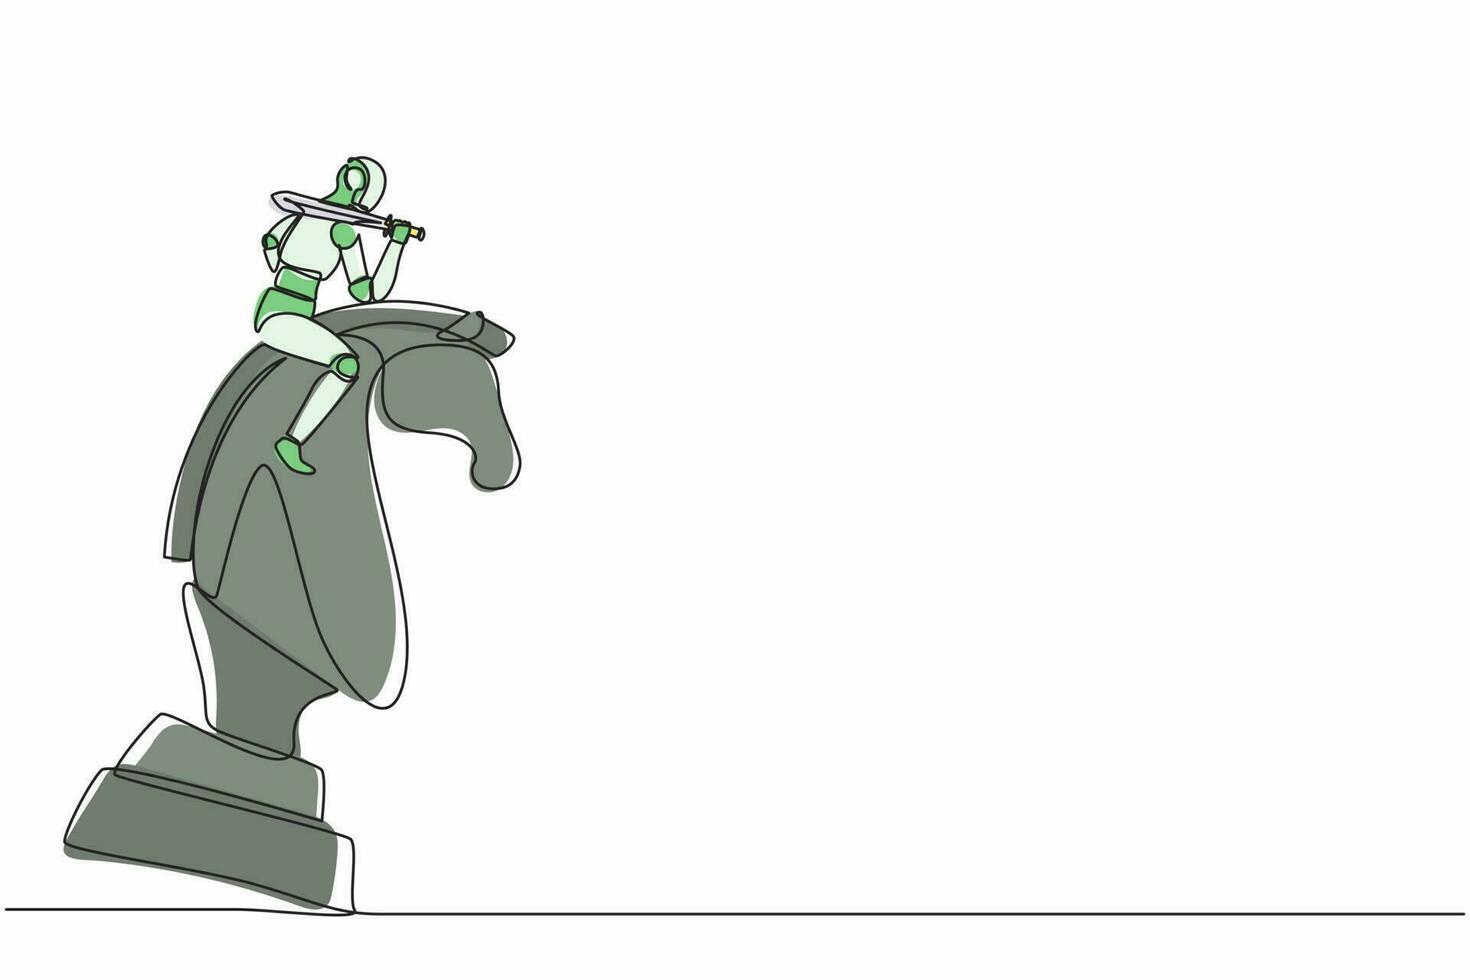 design plano gráfico desenho robô segurando peça de xadrez de torre para  vencer o xadrez do rei. plano de jogo de movimento estratégico.  desenvolvimento tecnológico futuro. inteligência artificial. ilustração  vetorial de estilo